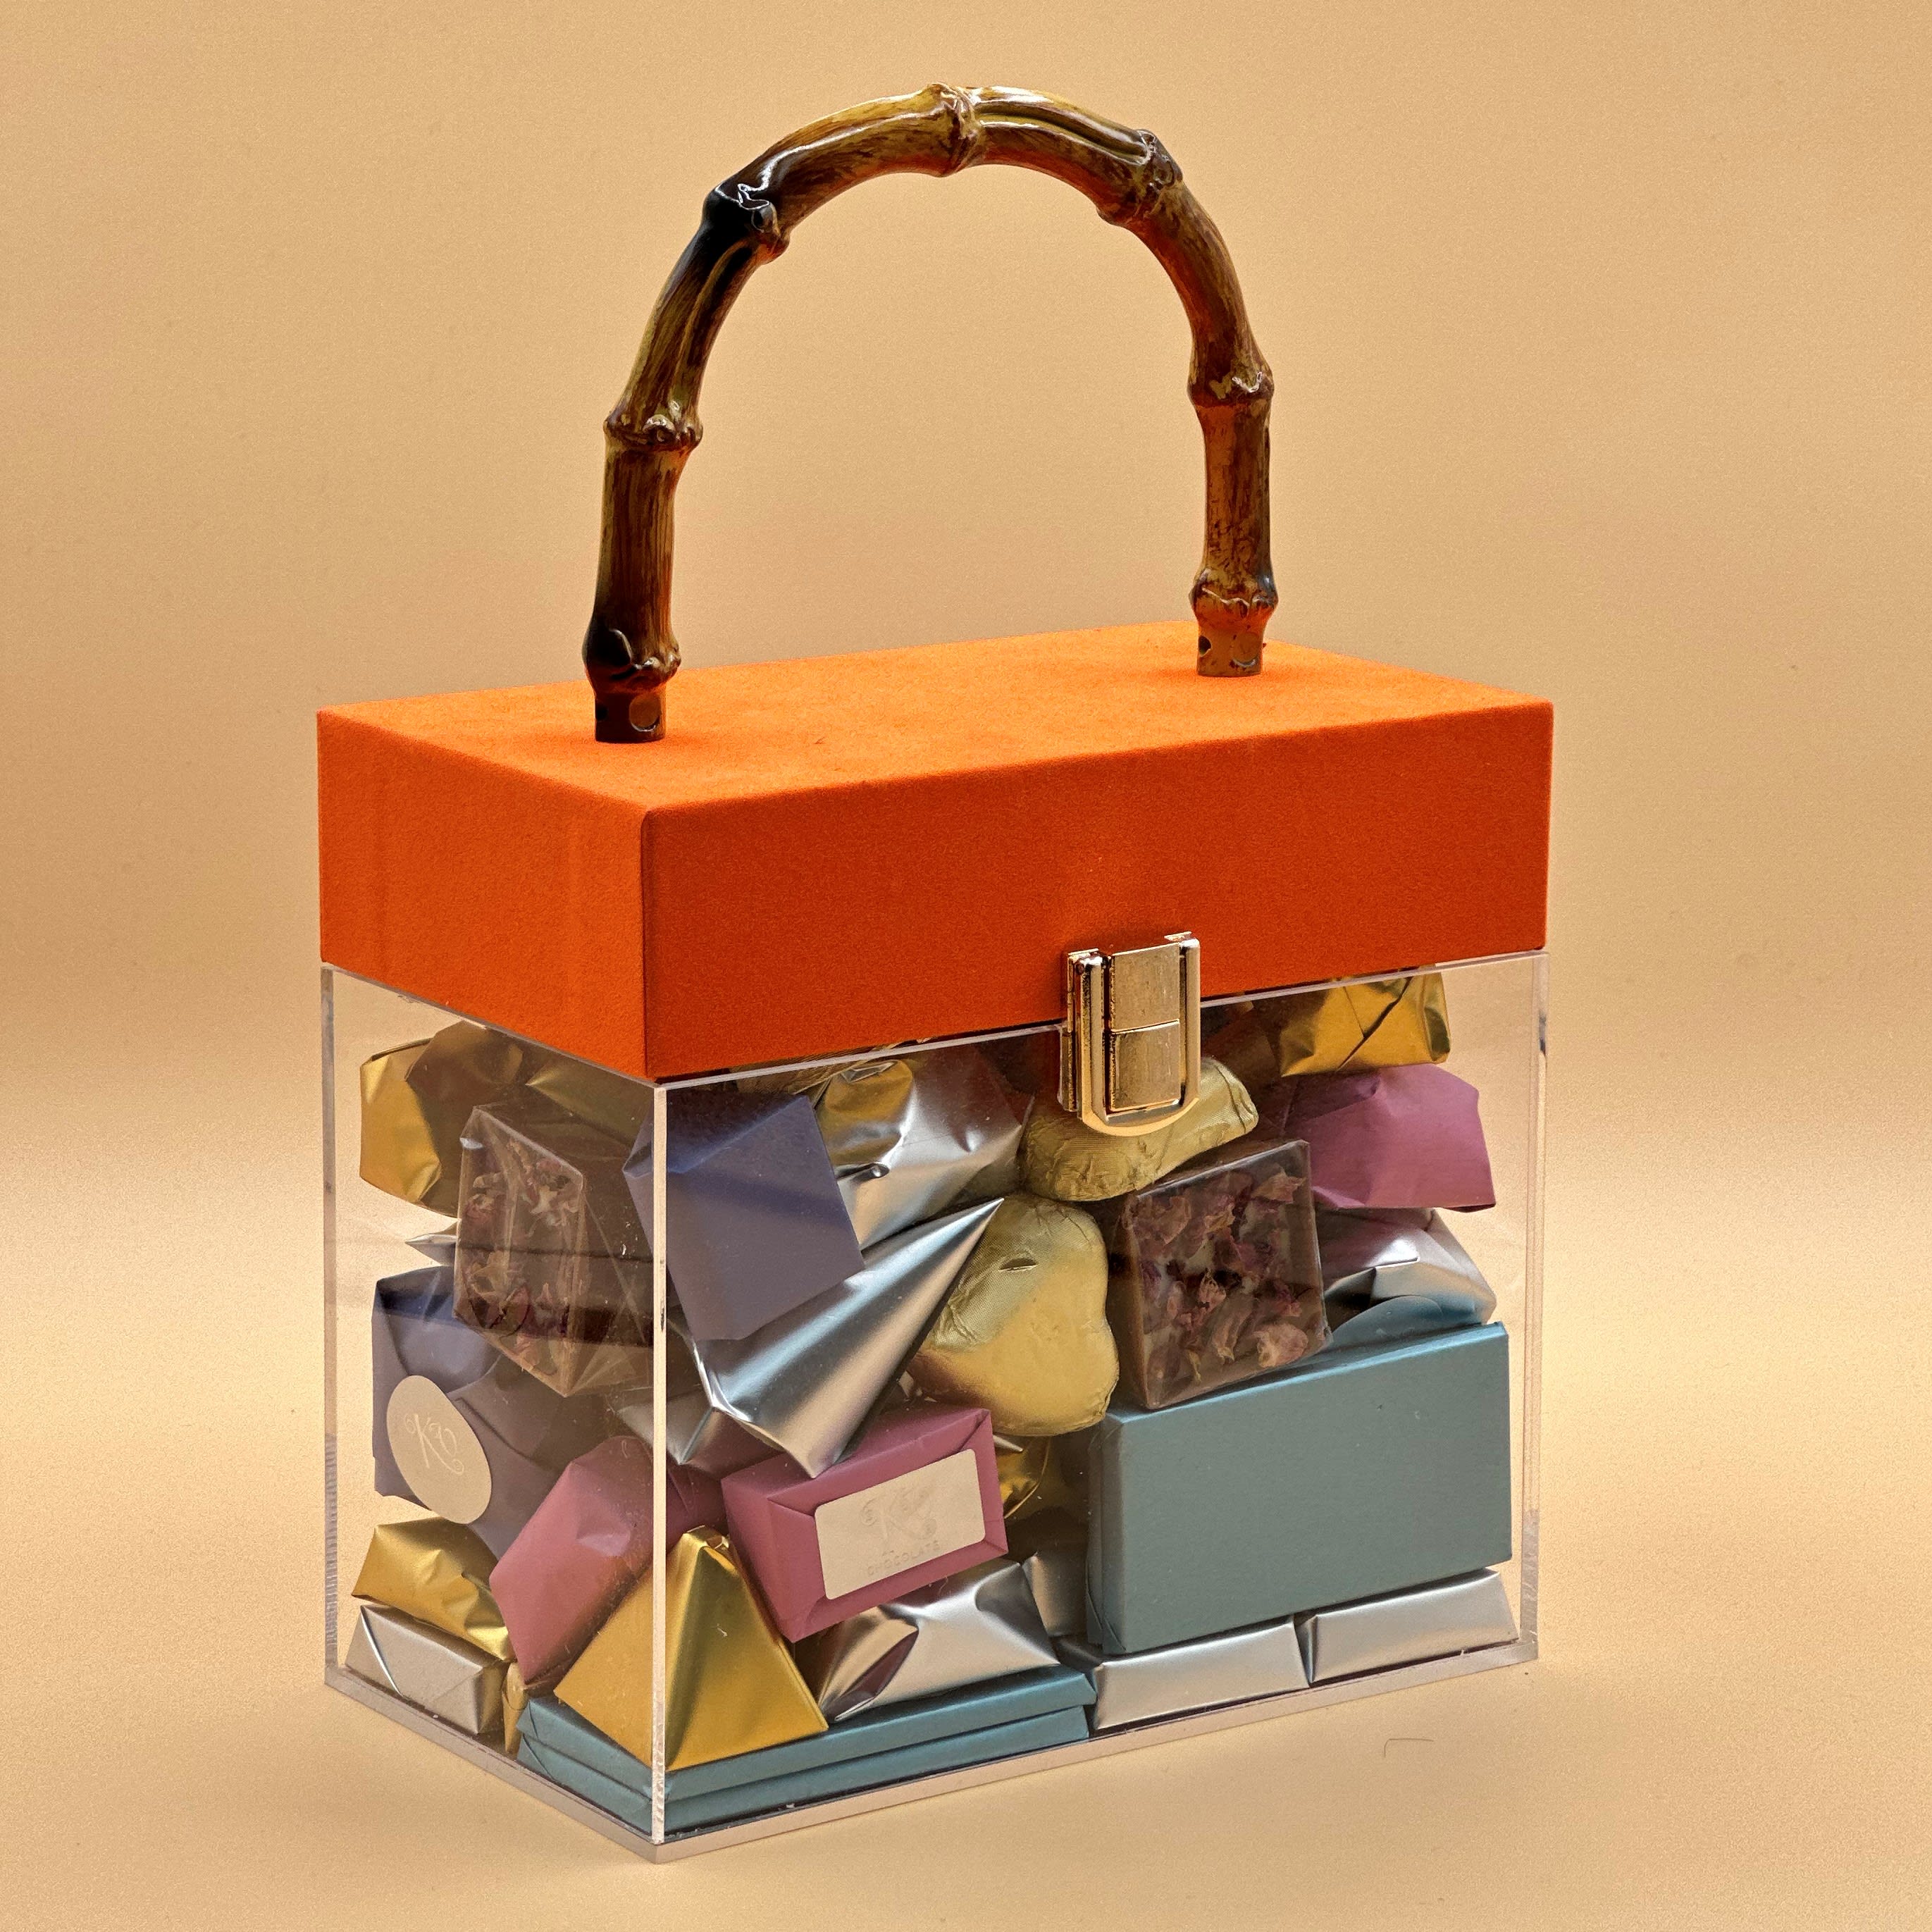 KV chocolates in a luxury box (orange) in Glendale, CA